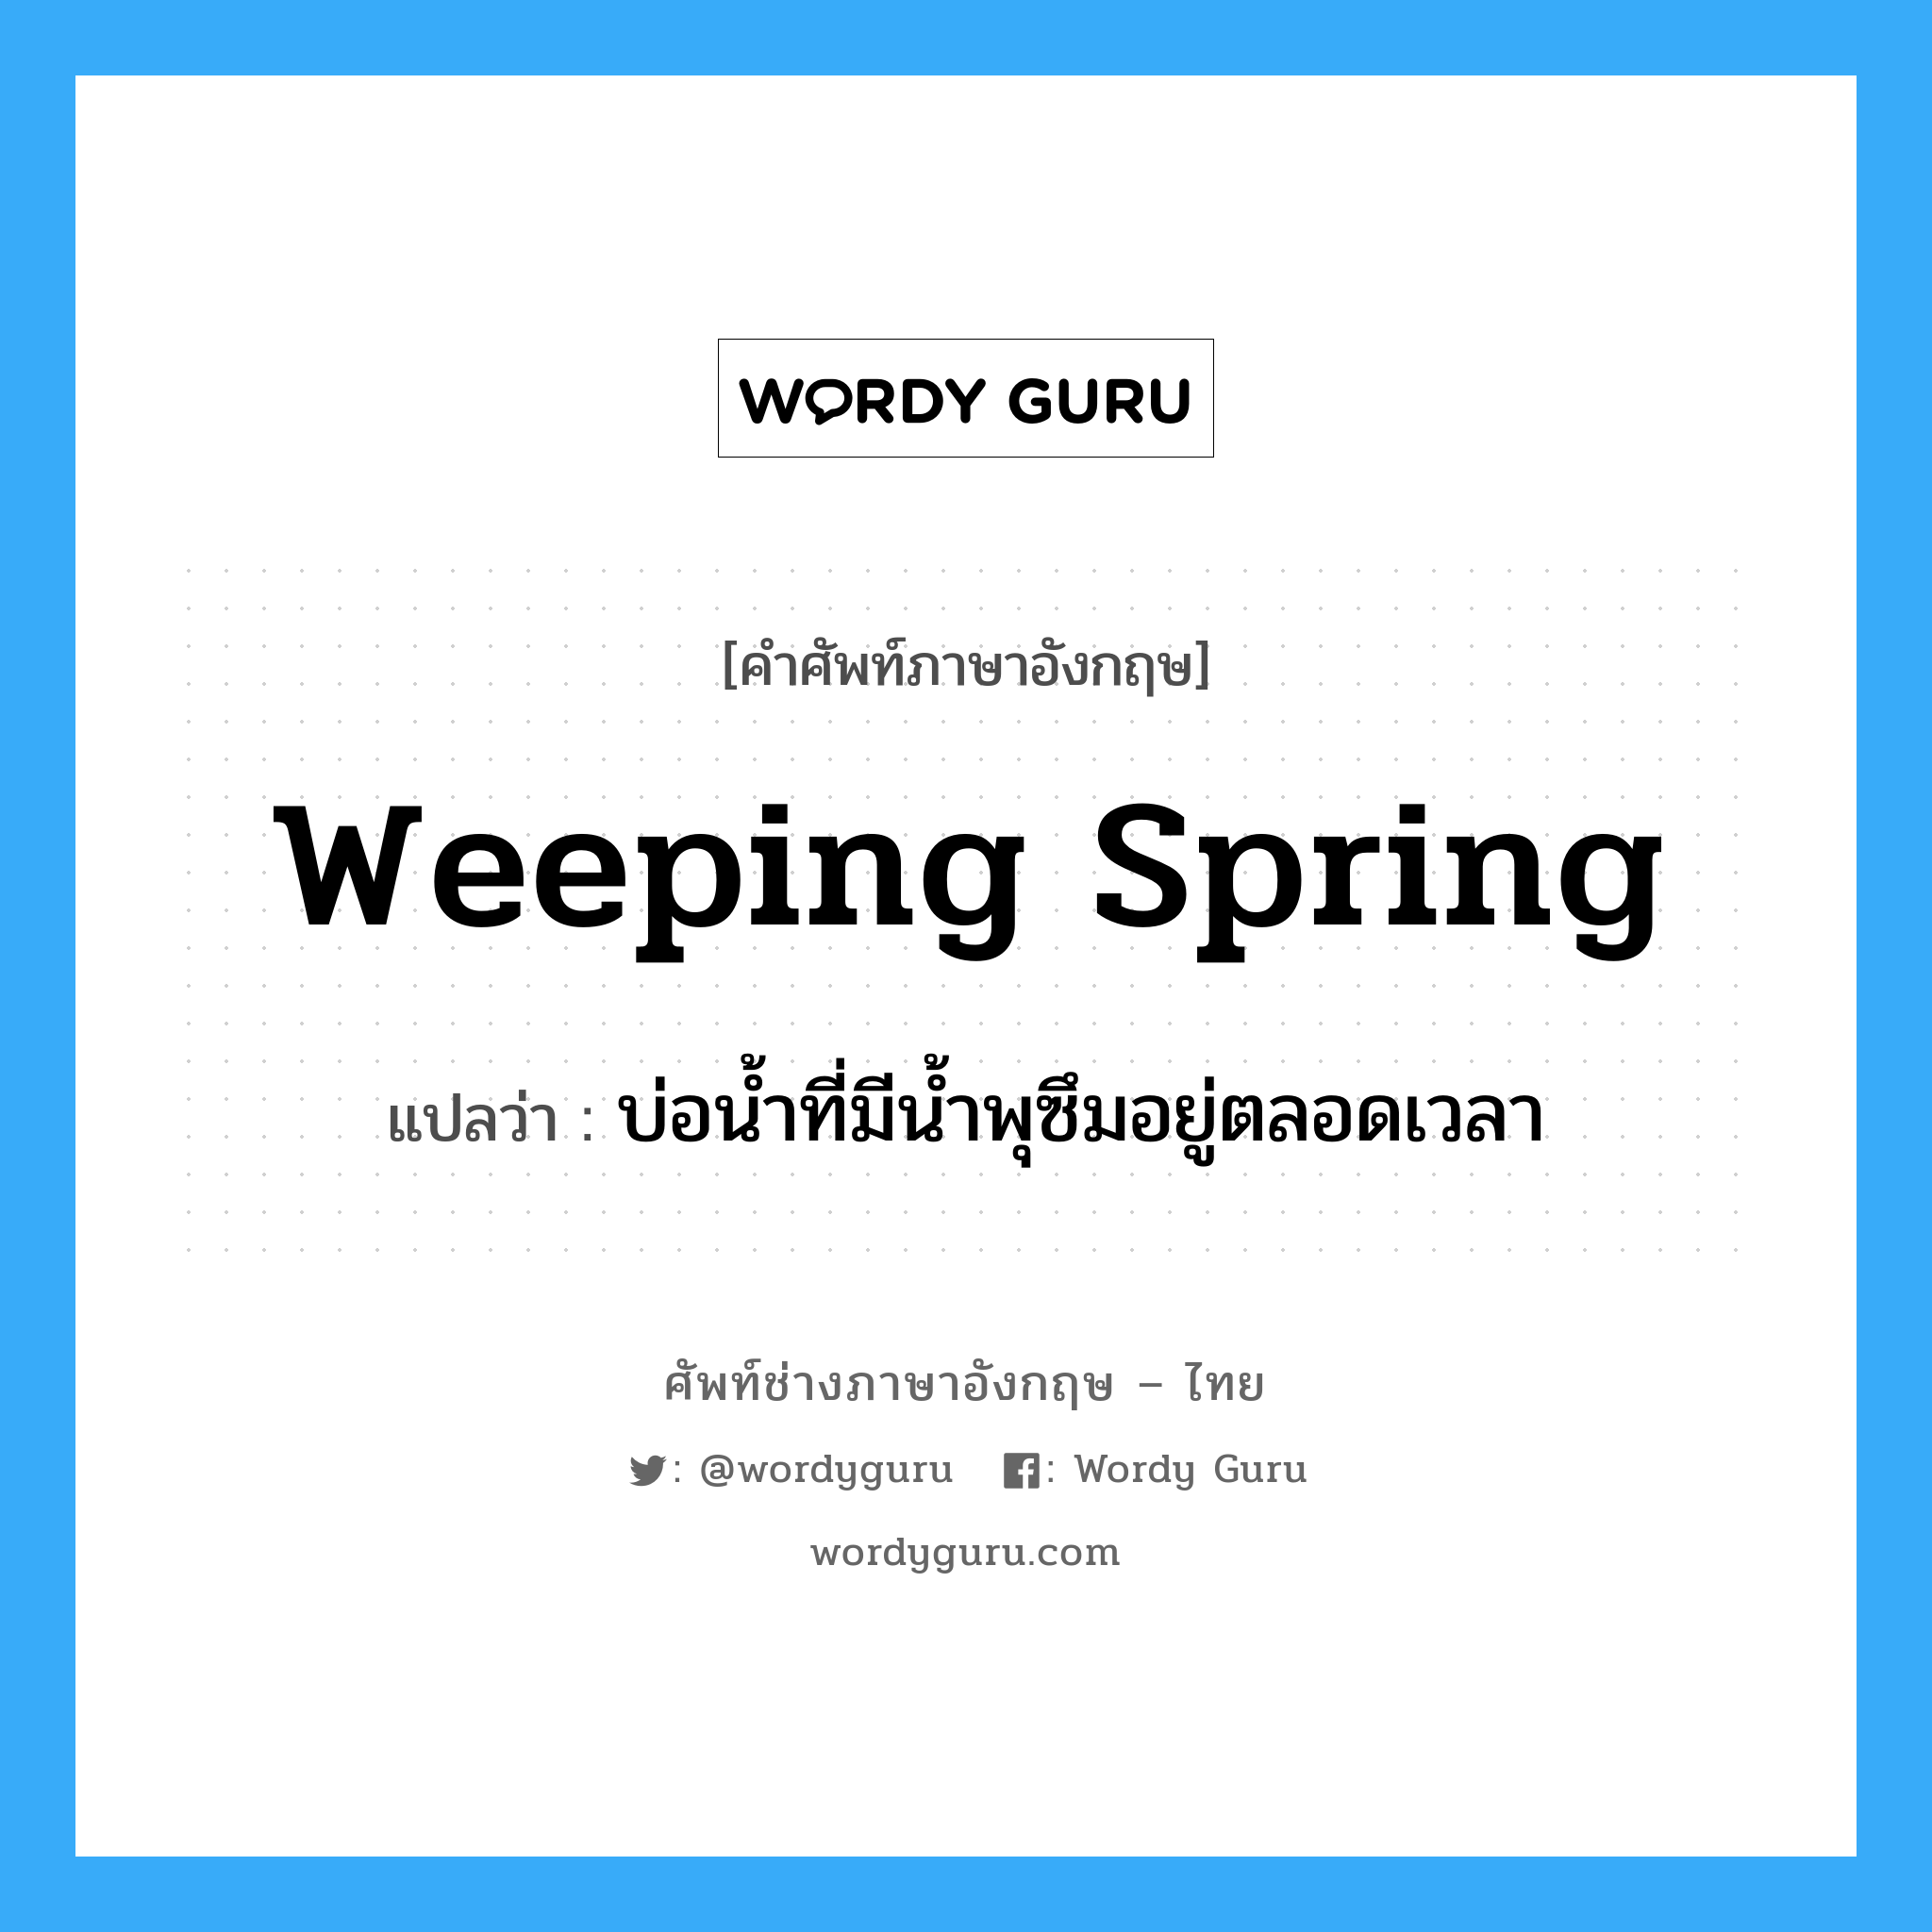 บ่อน้ำที่มีน้ำพุซึมอยู่ตลอดเวลา ภาษาอังกฤษ?, คำศัพท์ช่างภาษาอังกฤษ - ไทย บ่อน้ำที่มีน้ำพุซึมอยู่ตลอดเวลา คำศัพท์ภาษาอังกฤษ บ่อน้ำที่มีน้ำพุซึมอยู่ตลอดเวลา แปลว่า weeping spring